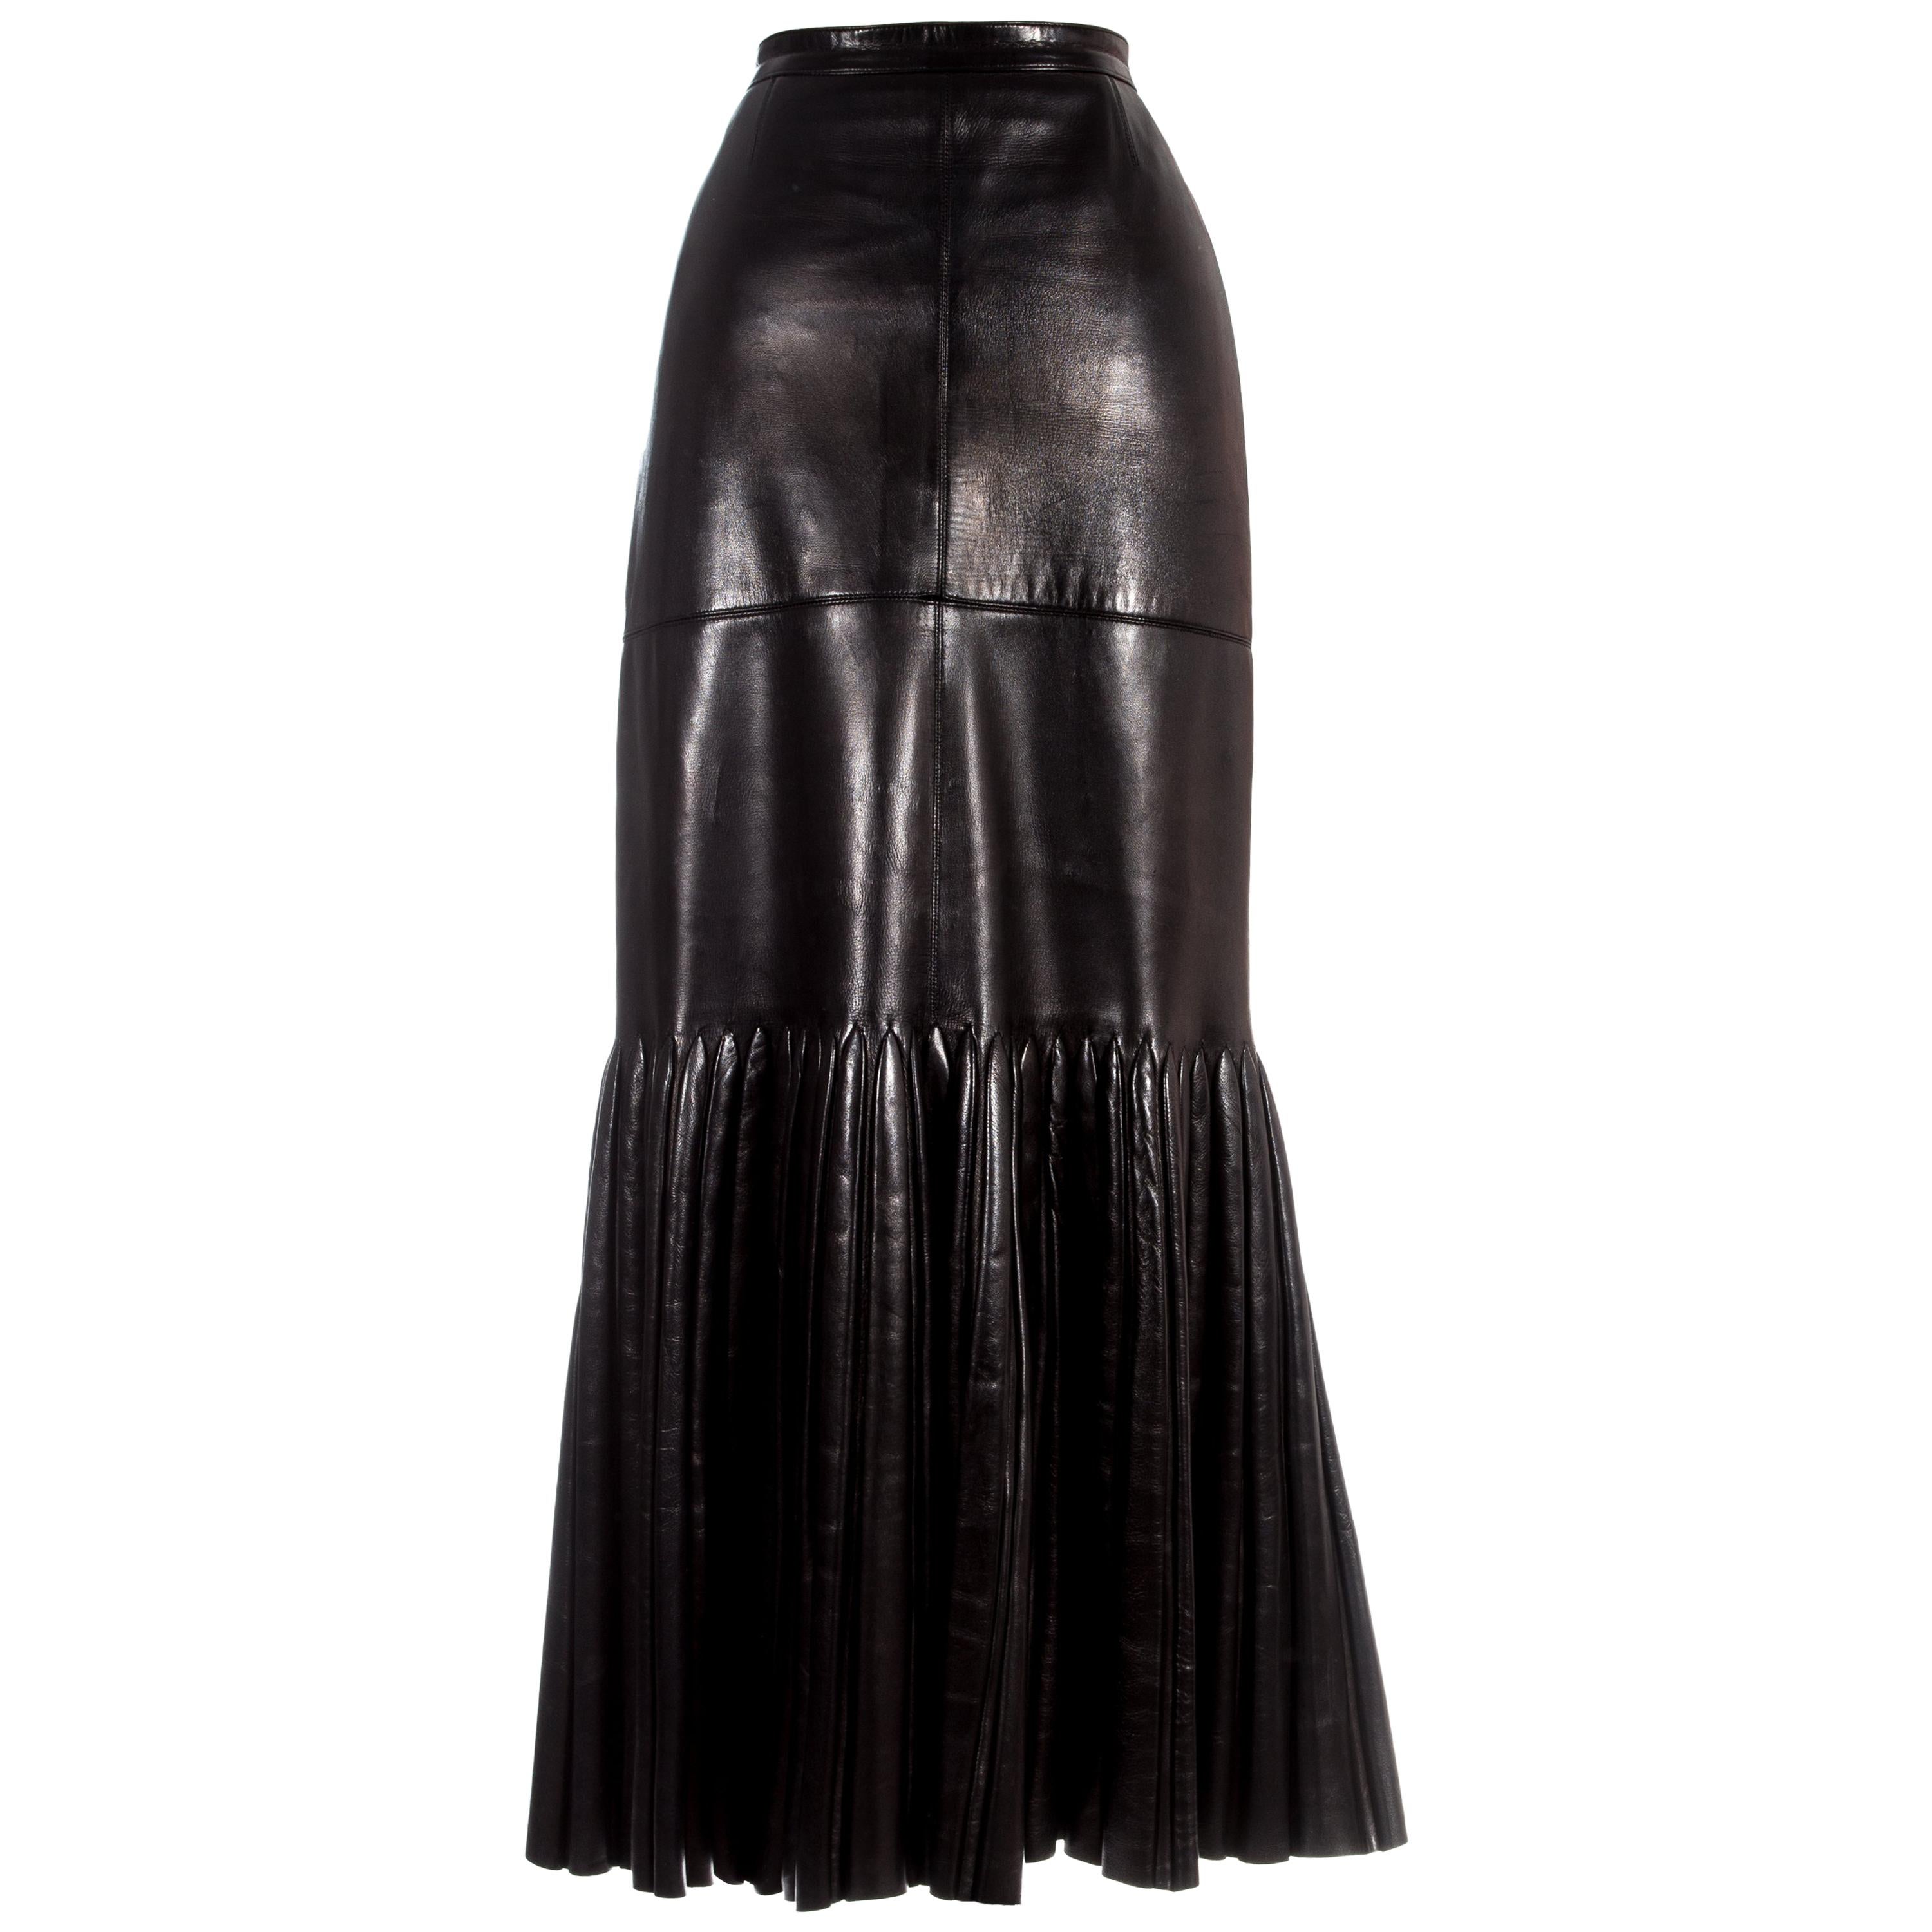 Azzedine Alaia black leather skirt with pleated mermaid hem, c. 1999